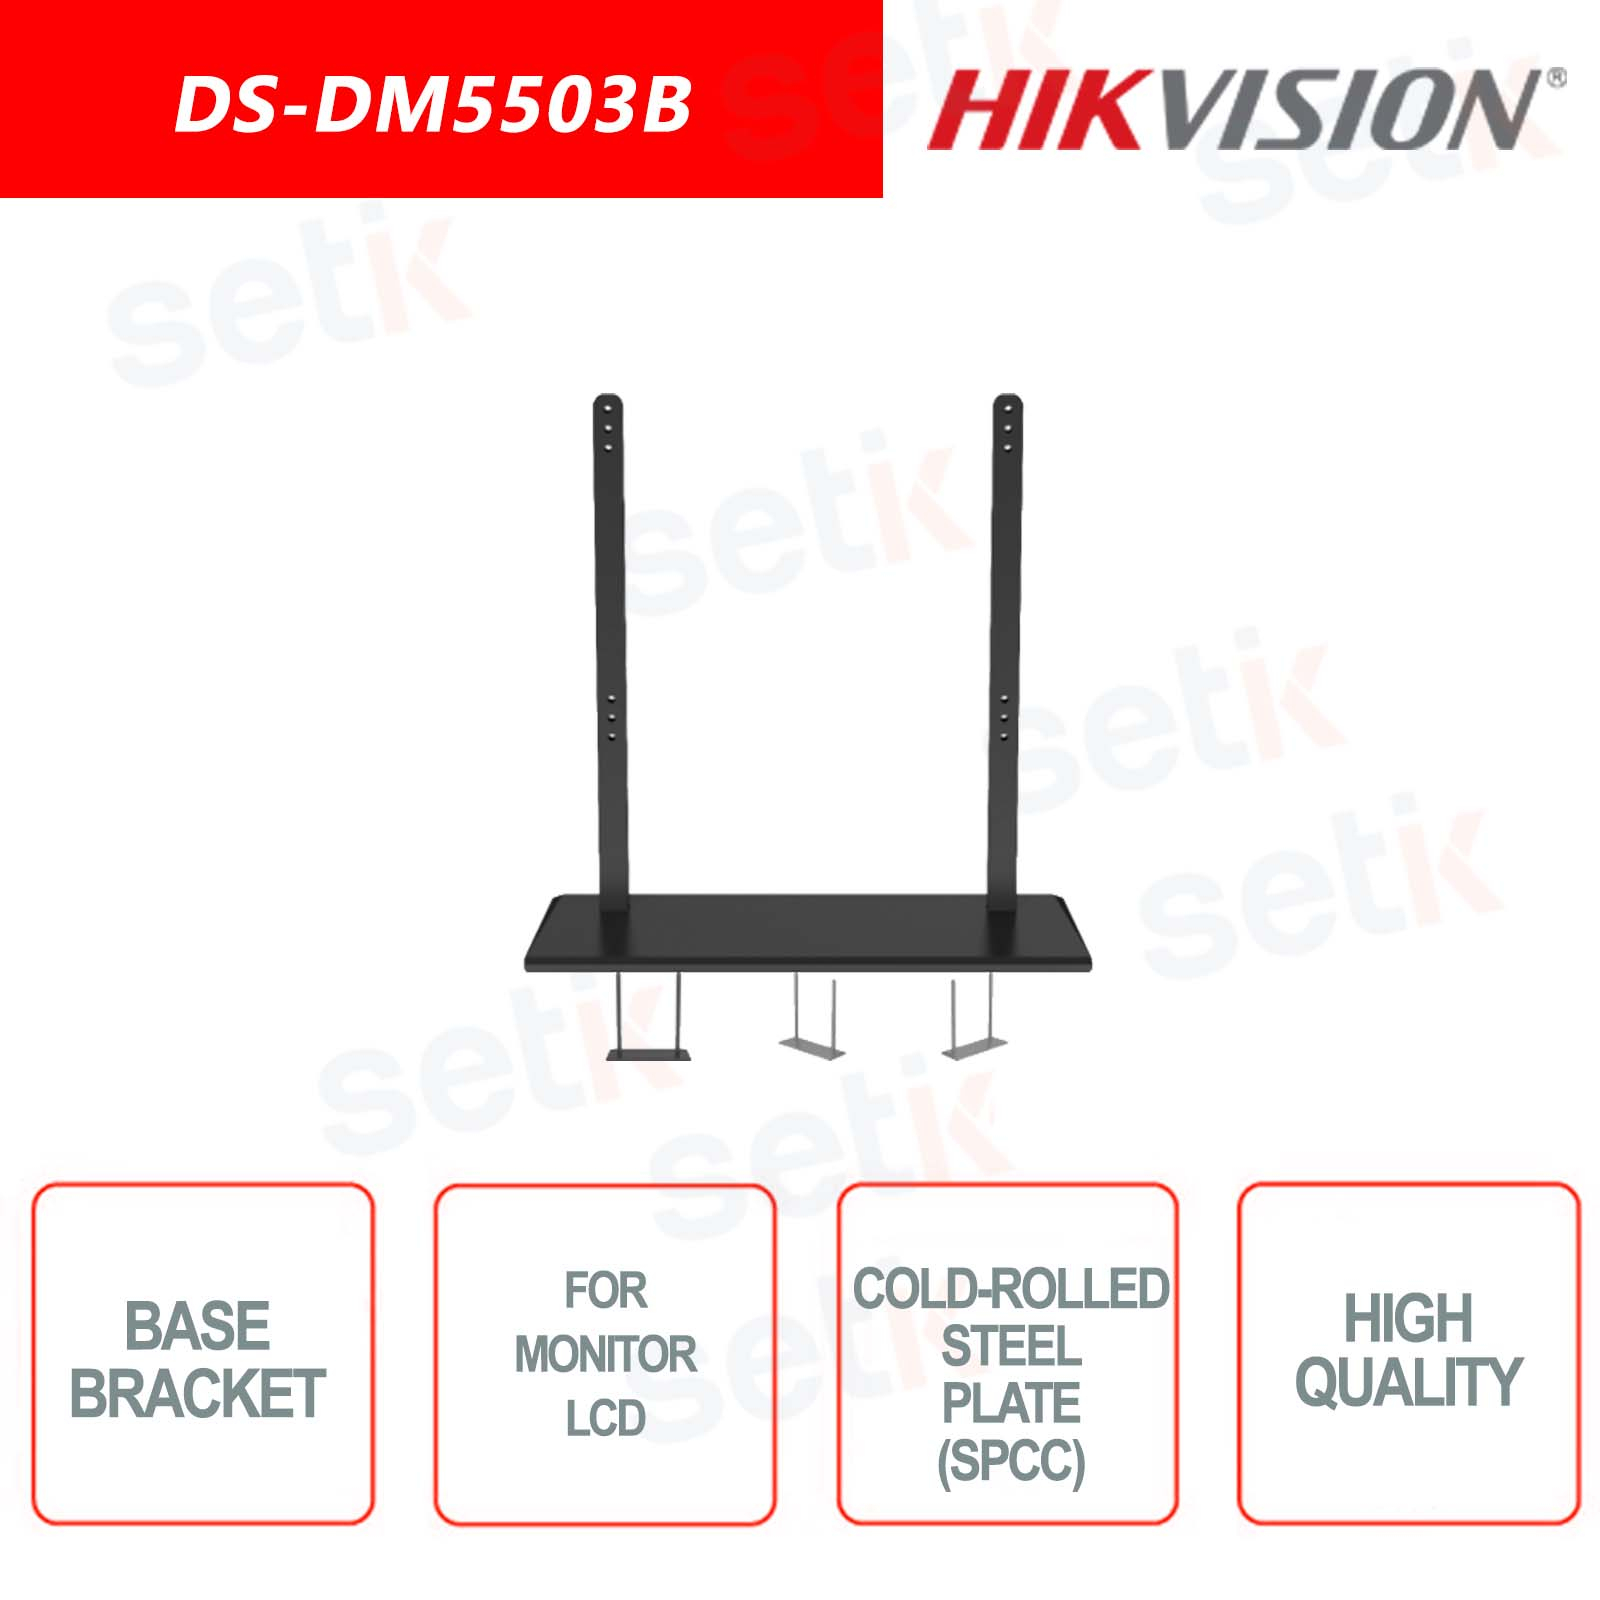 DS-DM5503B - Hikvision - Support de base pour le montage de moniteurs LCD 